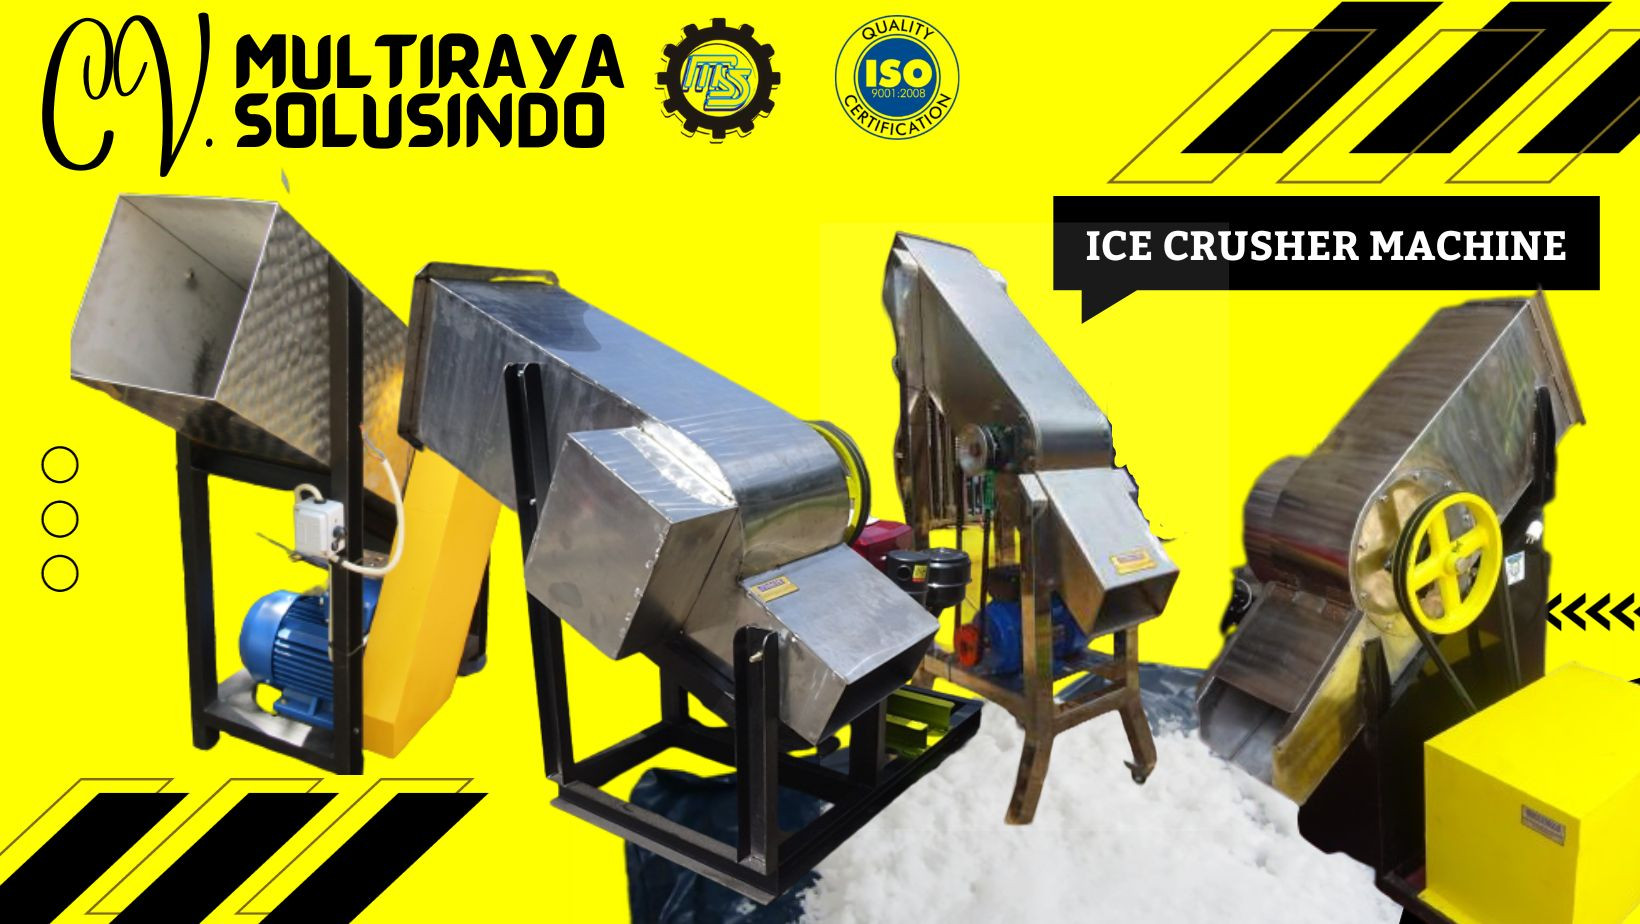 ICE CRUSHER MACHINE